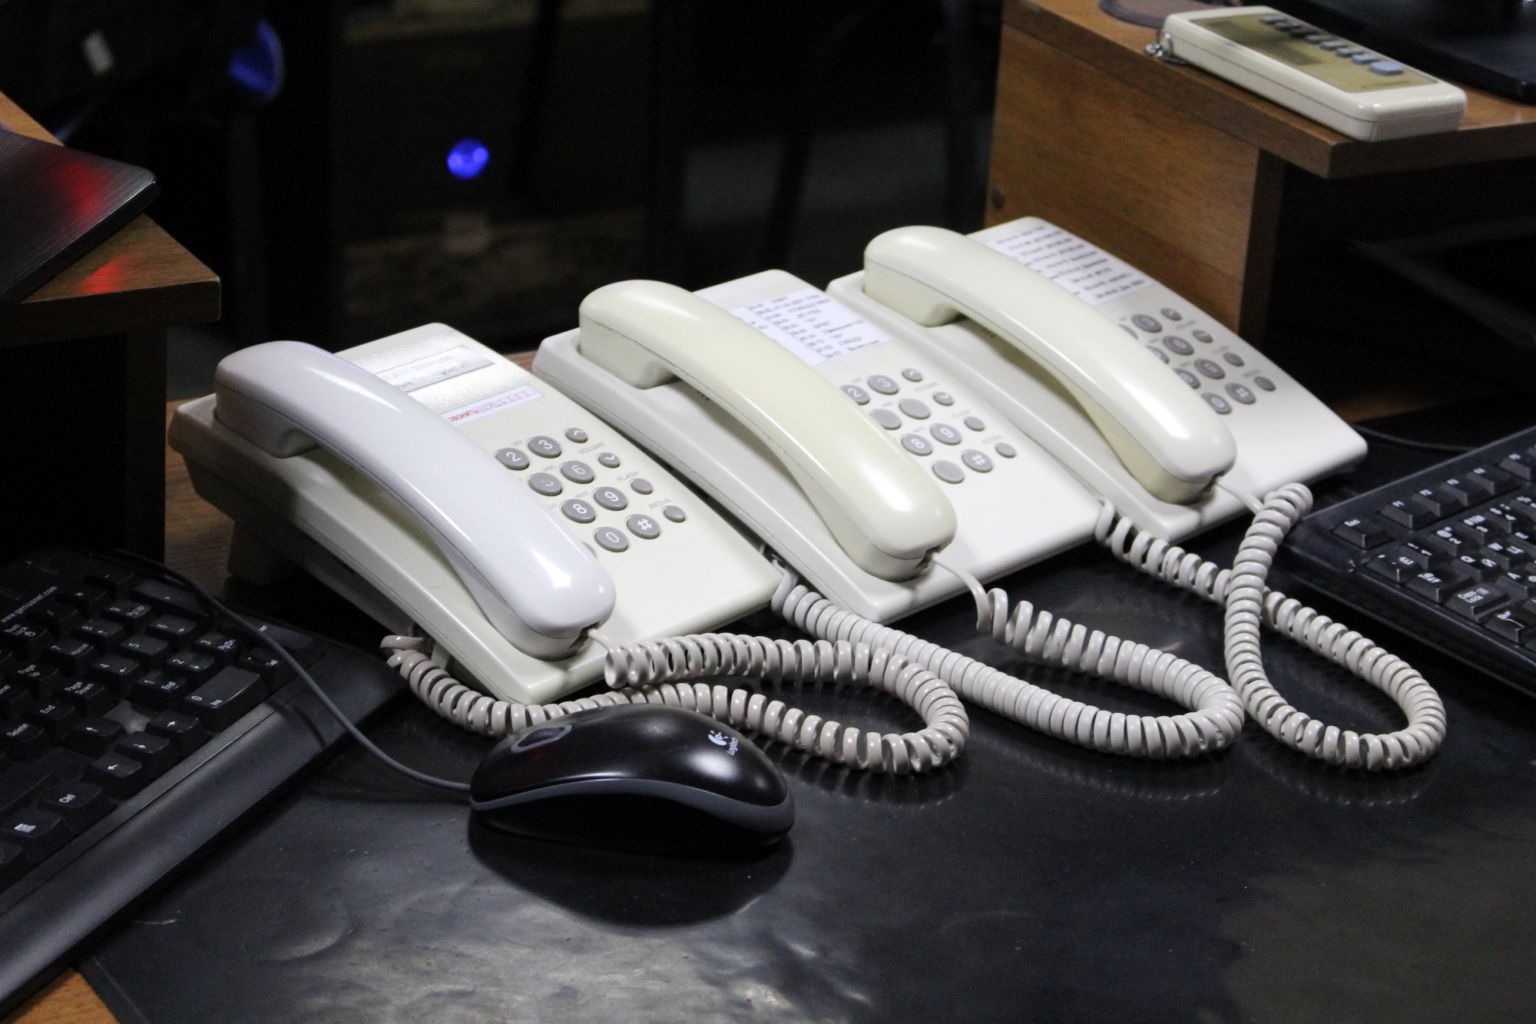 28 марта с 9.00 до 12.00  во всех райгорисполкомах Могилевской области будет проходить «прямая телефонная линия»